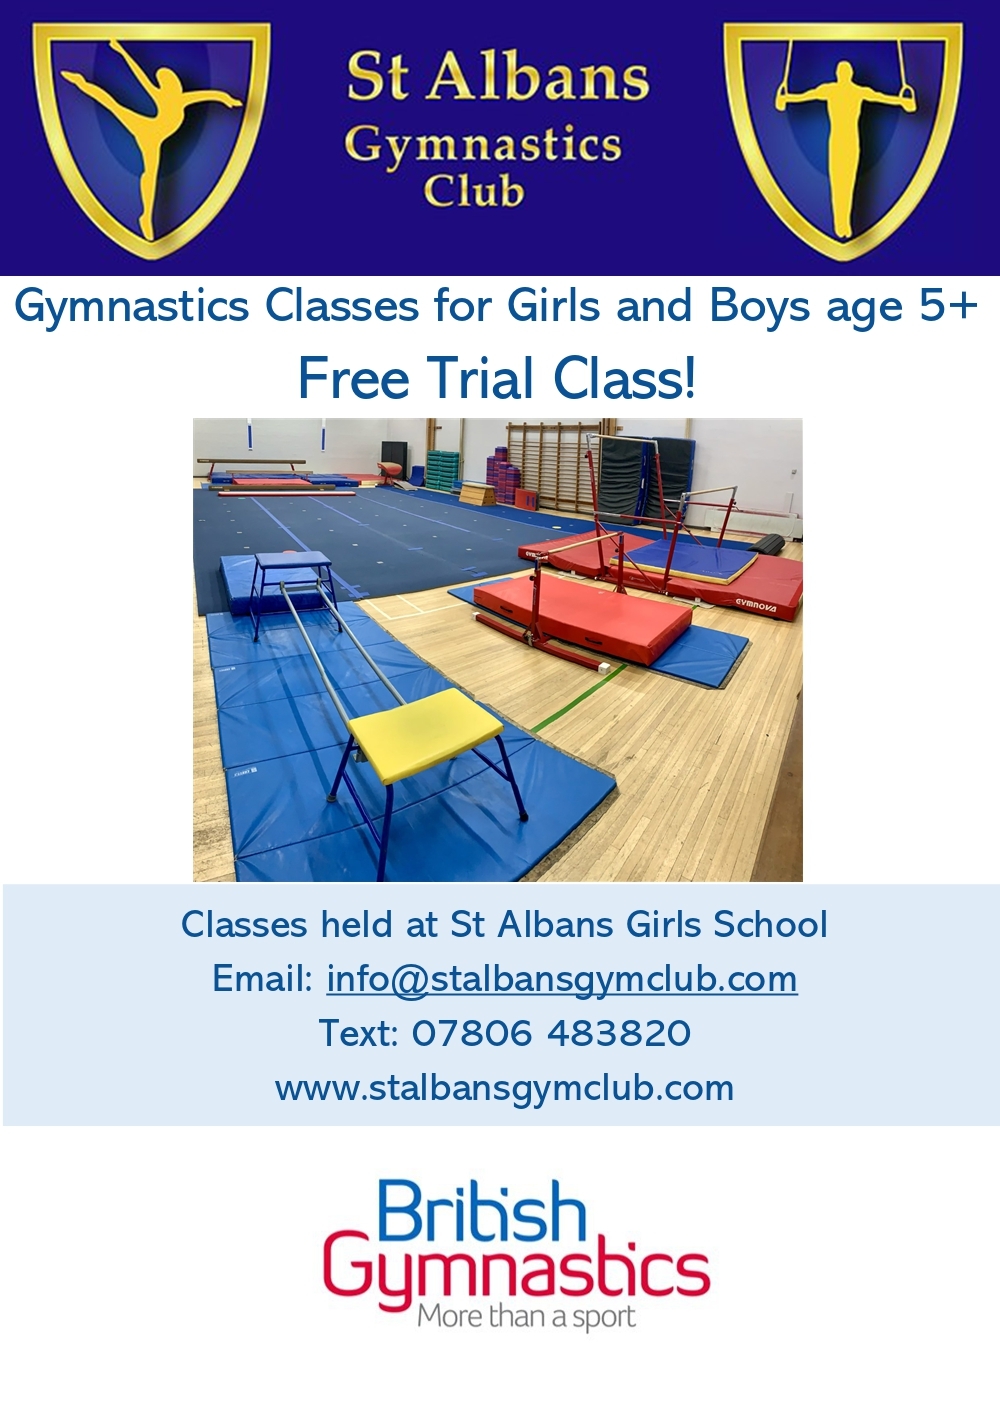 St Albans Gym Club Leaflet